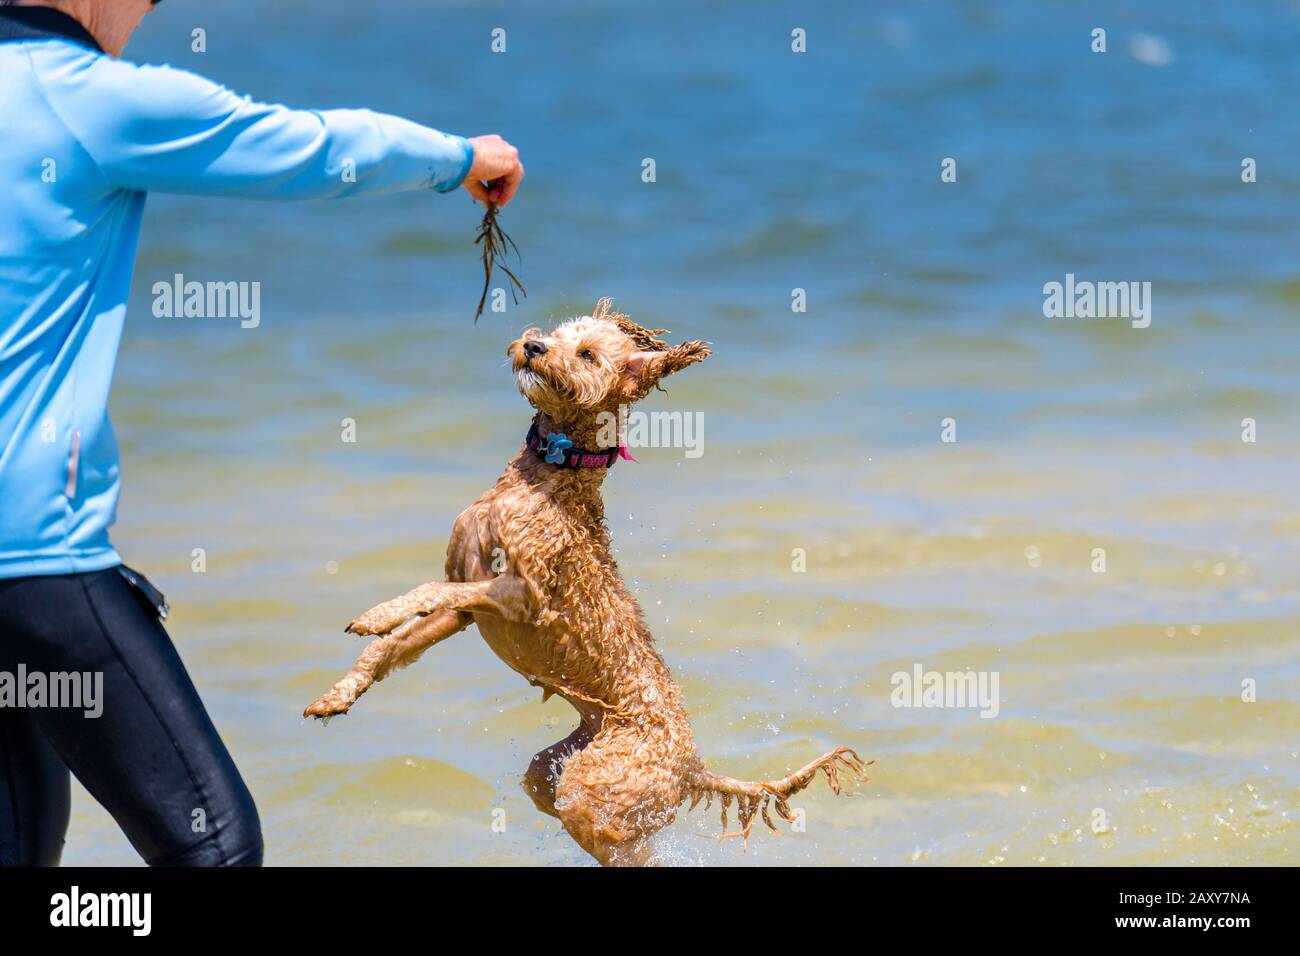 Ein Puppenstoß, der mit seinem Besitzer am Strand spielt. Der Hund springt in die Luft, um Algen zu fangen, die sein Besitzer hält Stockfoto